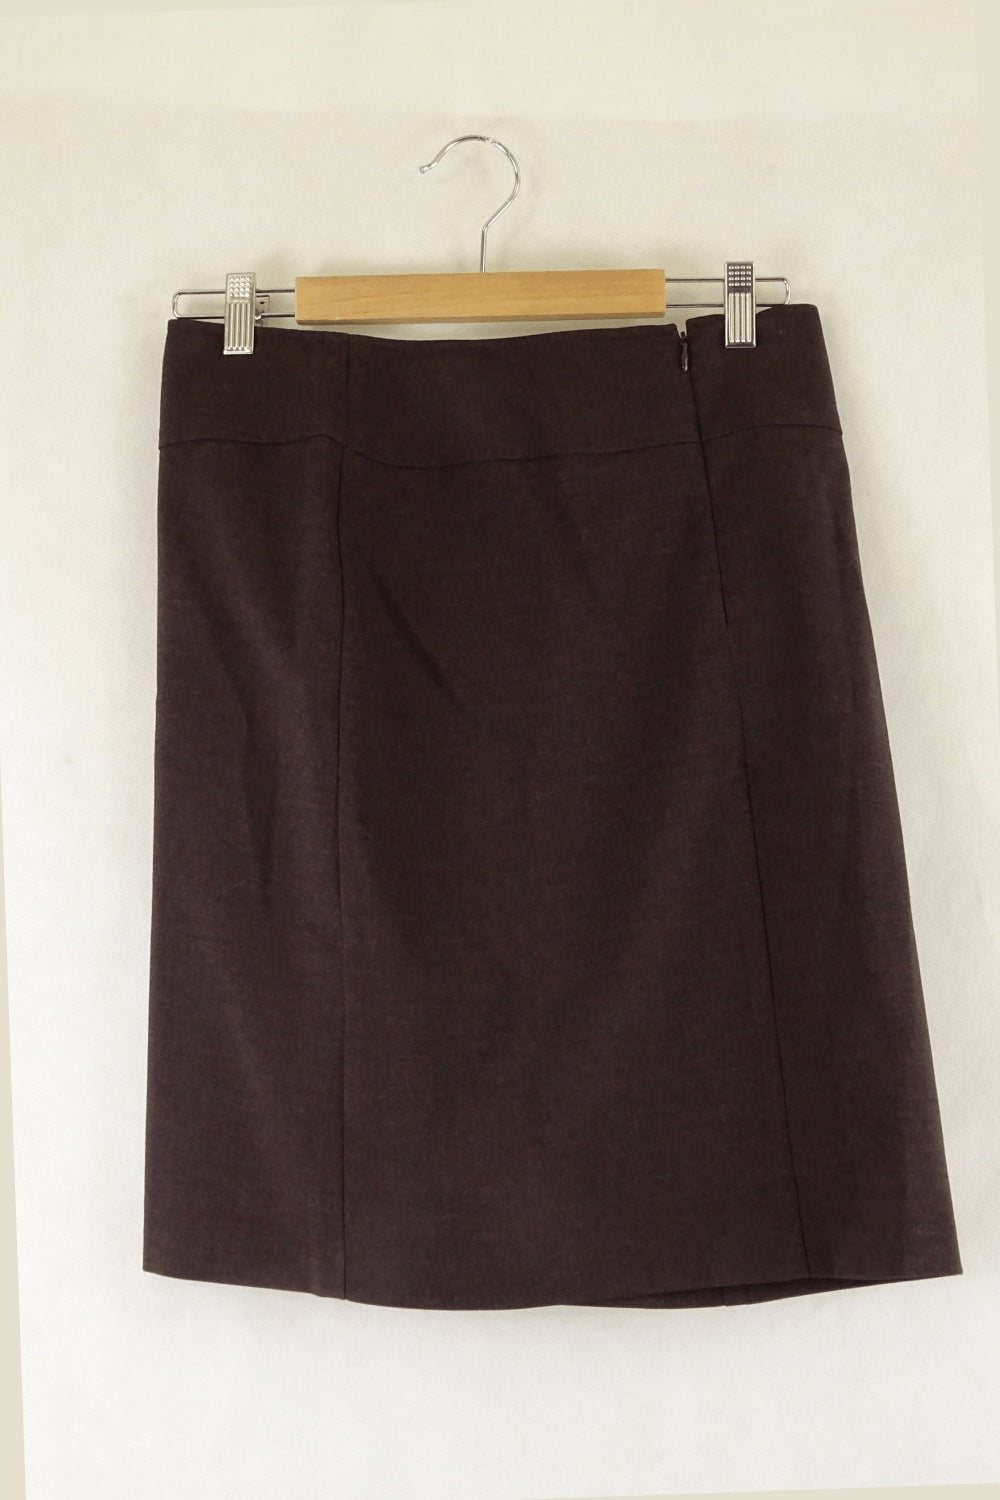 Cue Brown Skirt 10